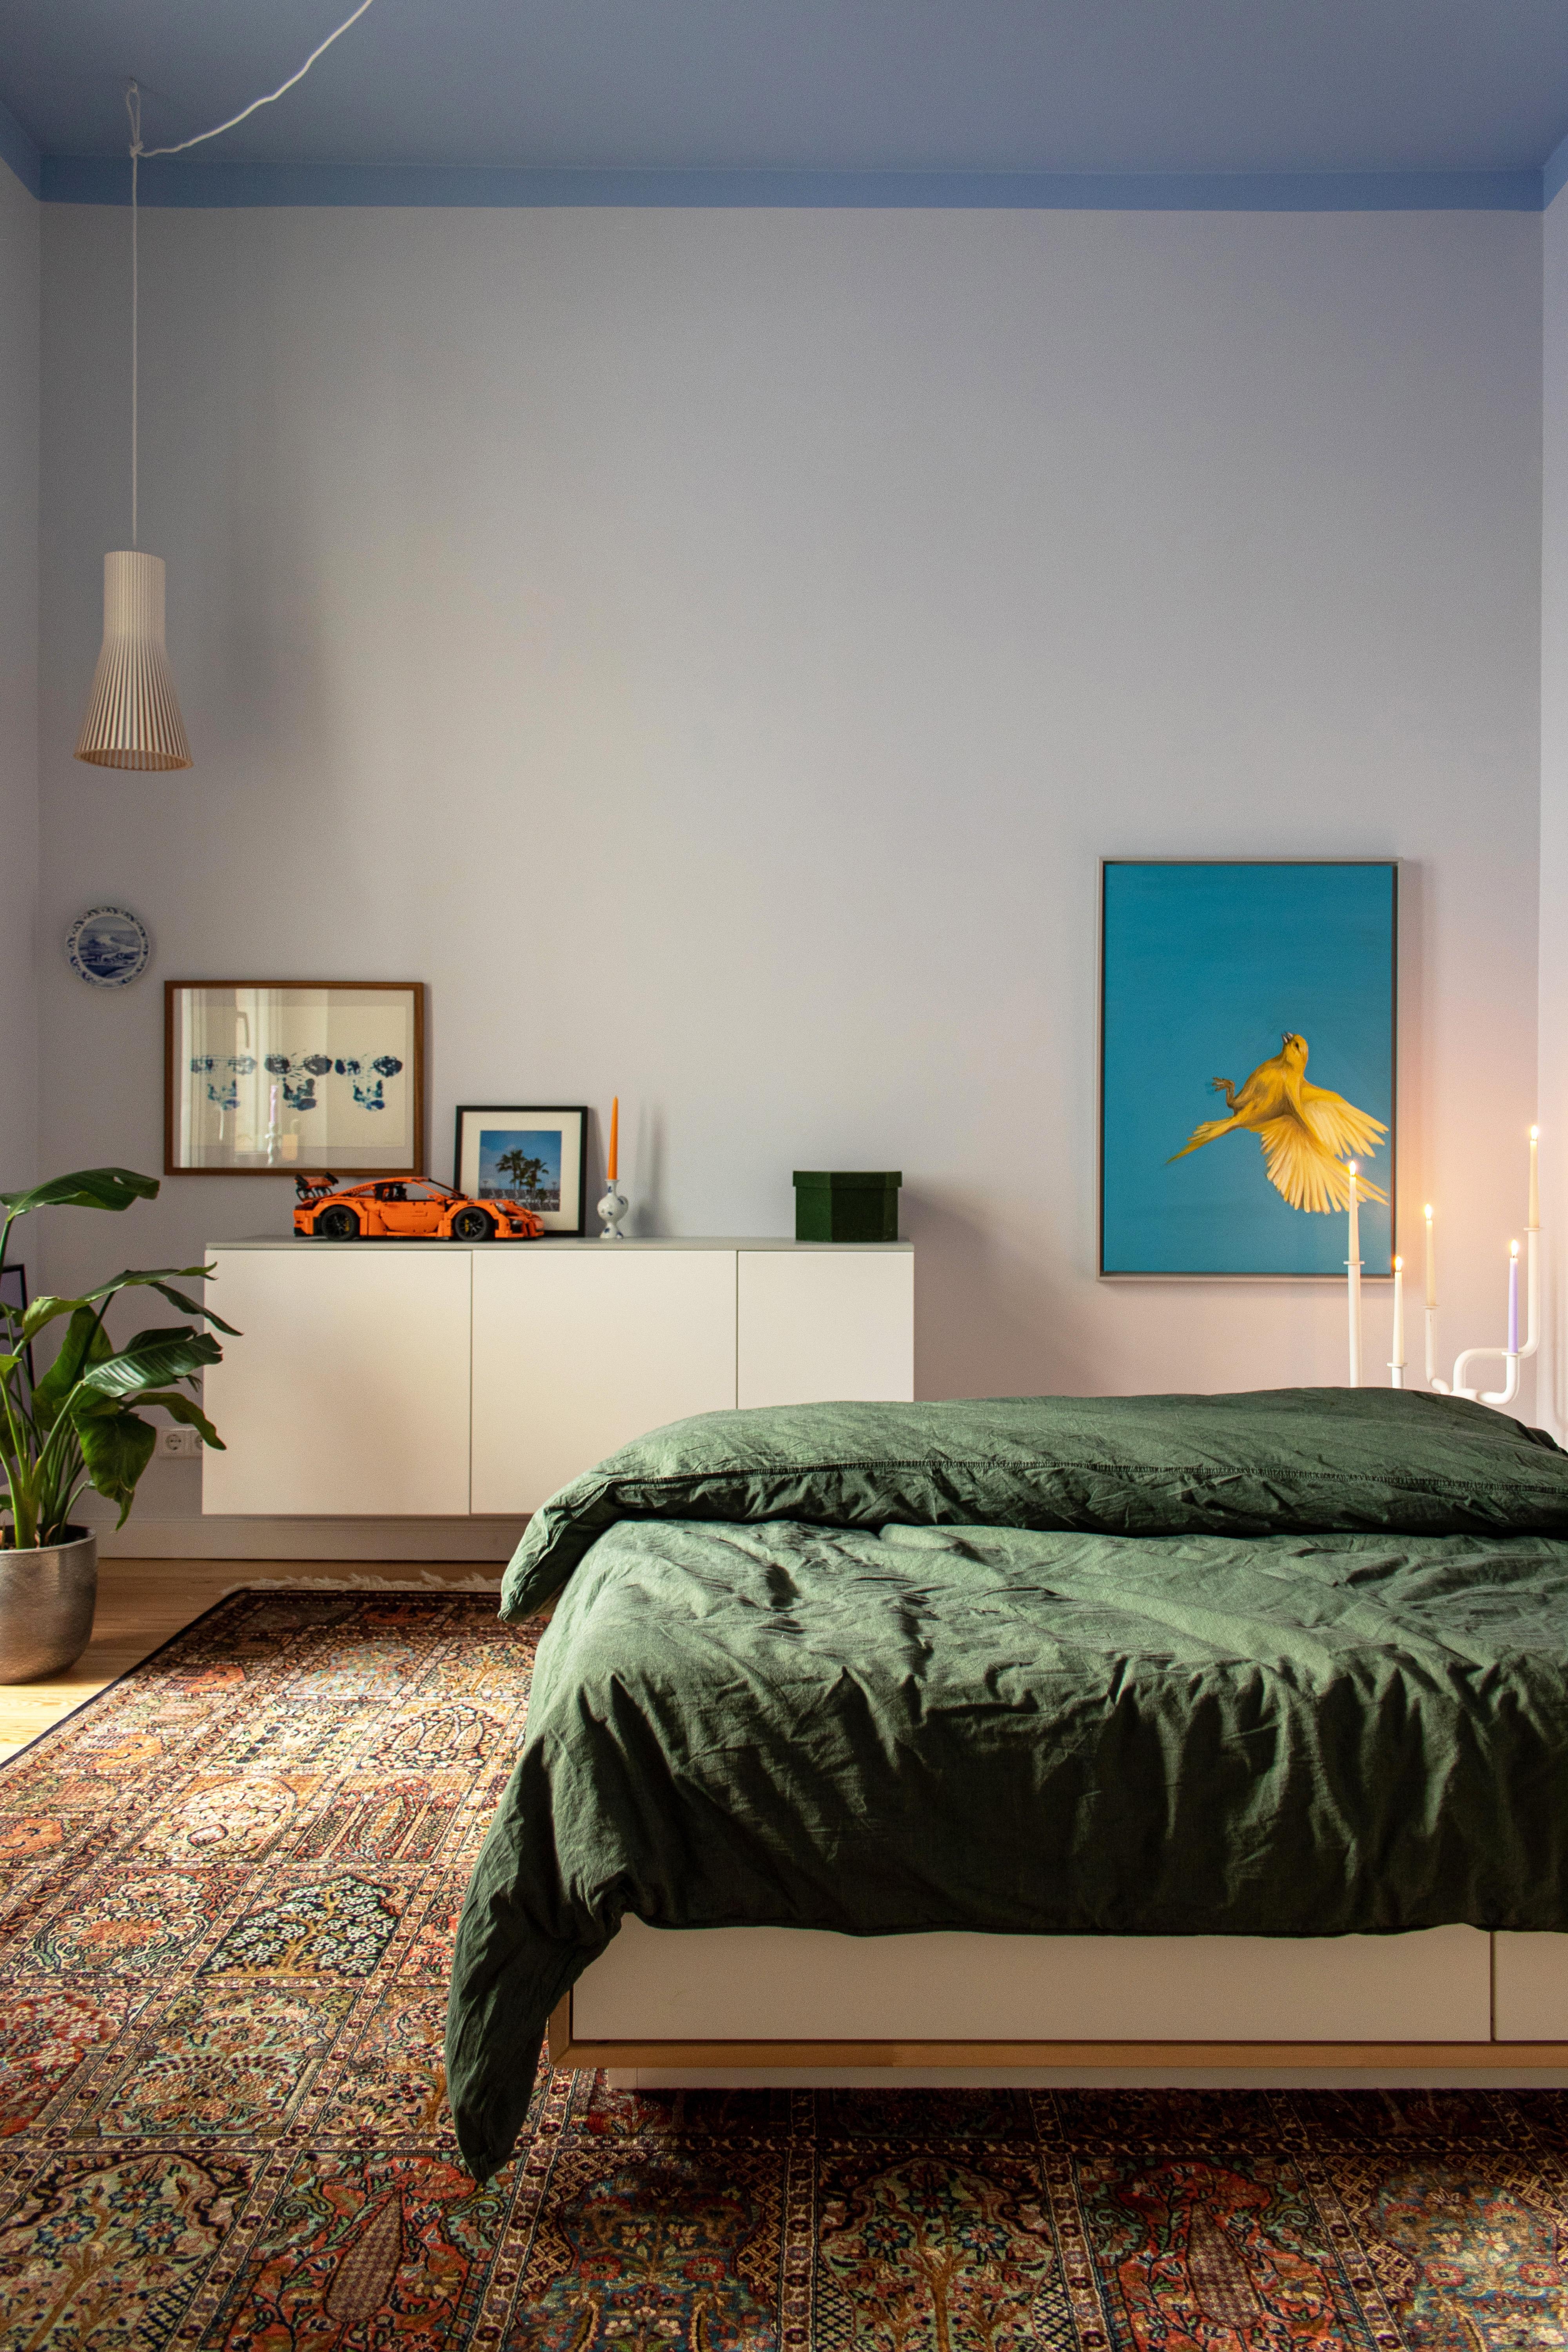 #schlafzimmer #couchliebt #couchstyle #couchmoment #blau #grün #farbe #wandfarbe #bett #teppich #kunst #bettwäsche